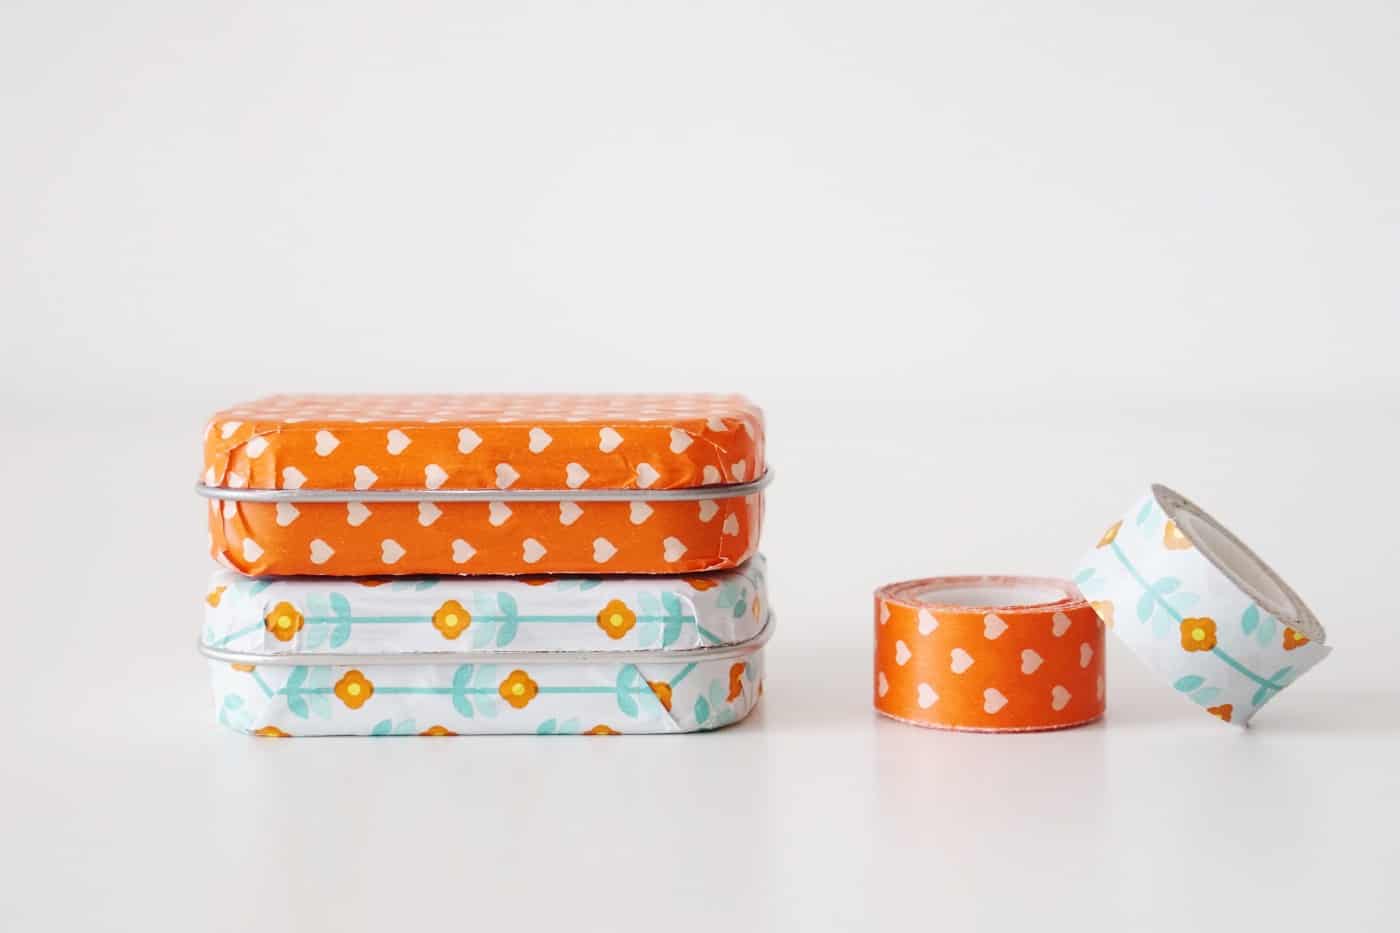 Se gosta de fitas adesivas de washi, pegue no seu padrão preferido, uma lata de hortelã usada, e transforme-se num suportezinho giro! Este é um artesanato tão divertido e fácil de usar!